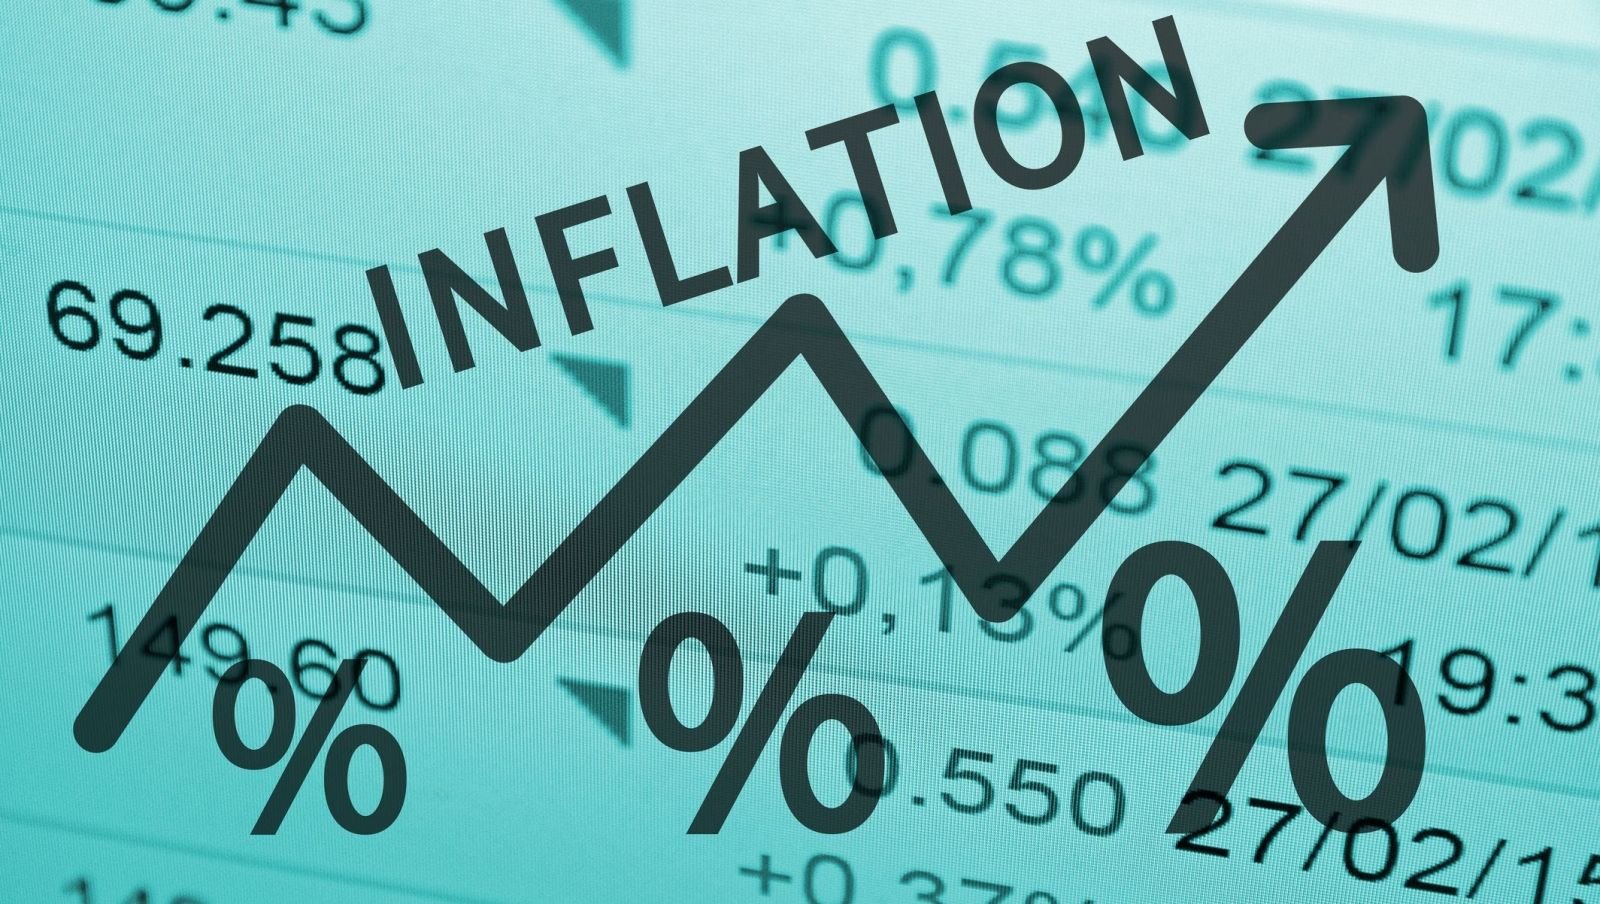 Энэ оны төсөвт тусгаснаар инфляцыг 6.7 хувьд барих зорилтыг хангаж чадах уу?